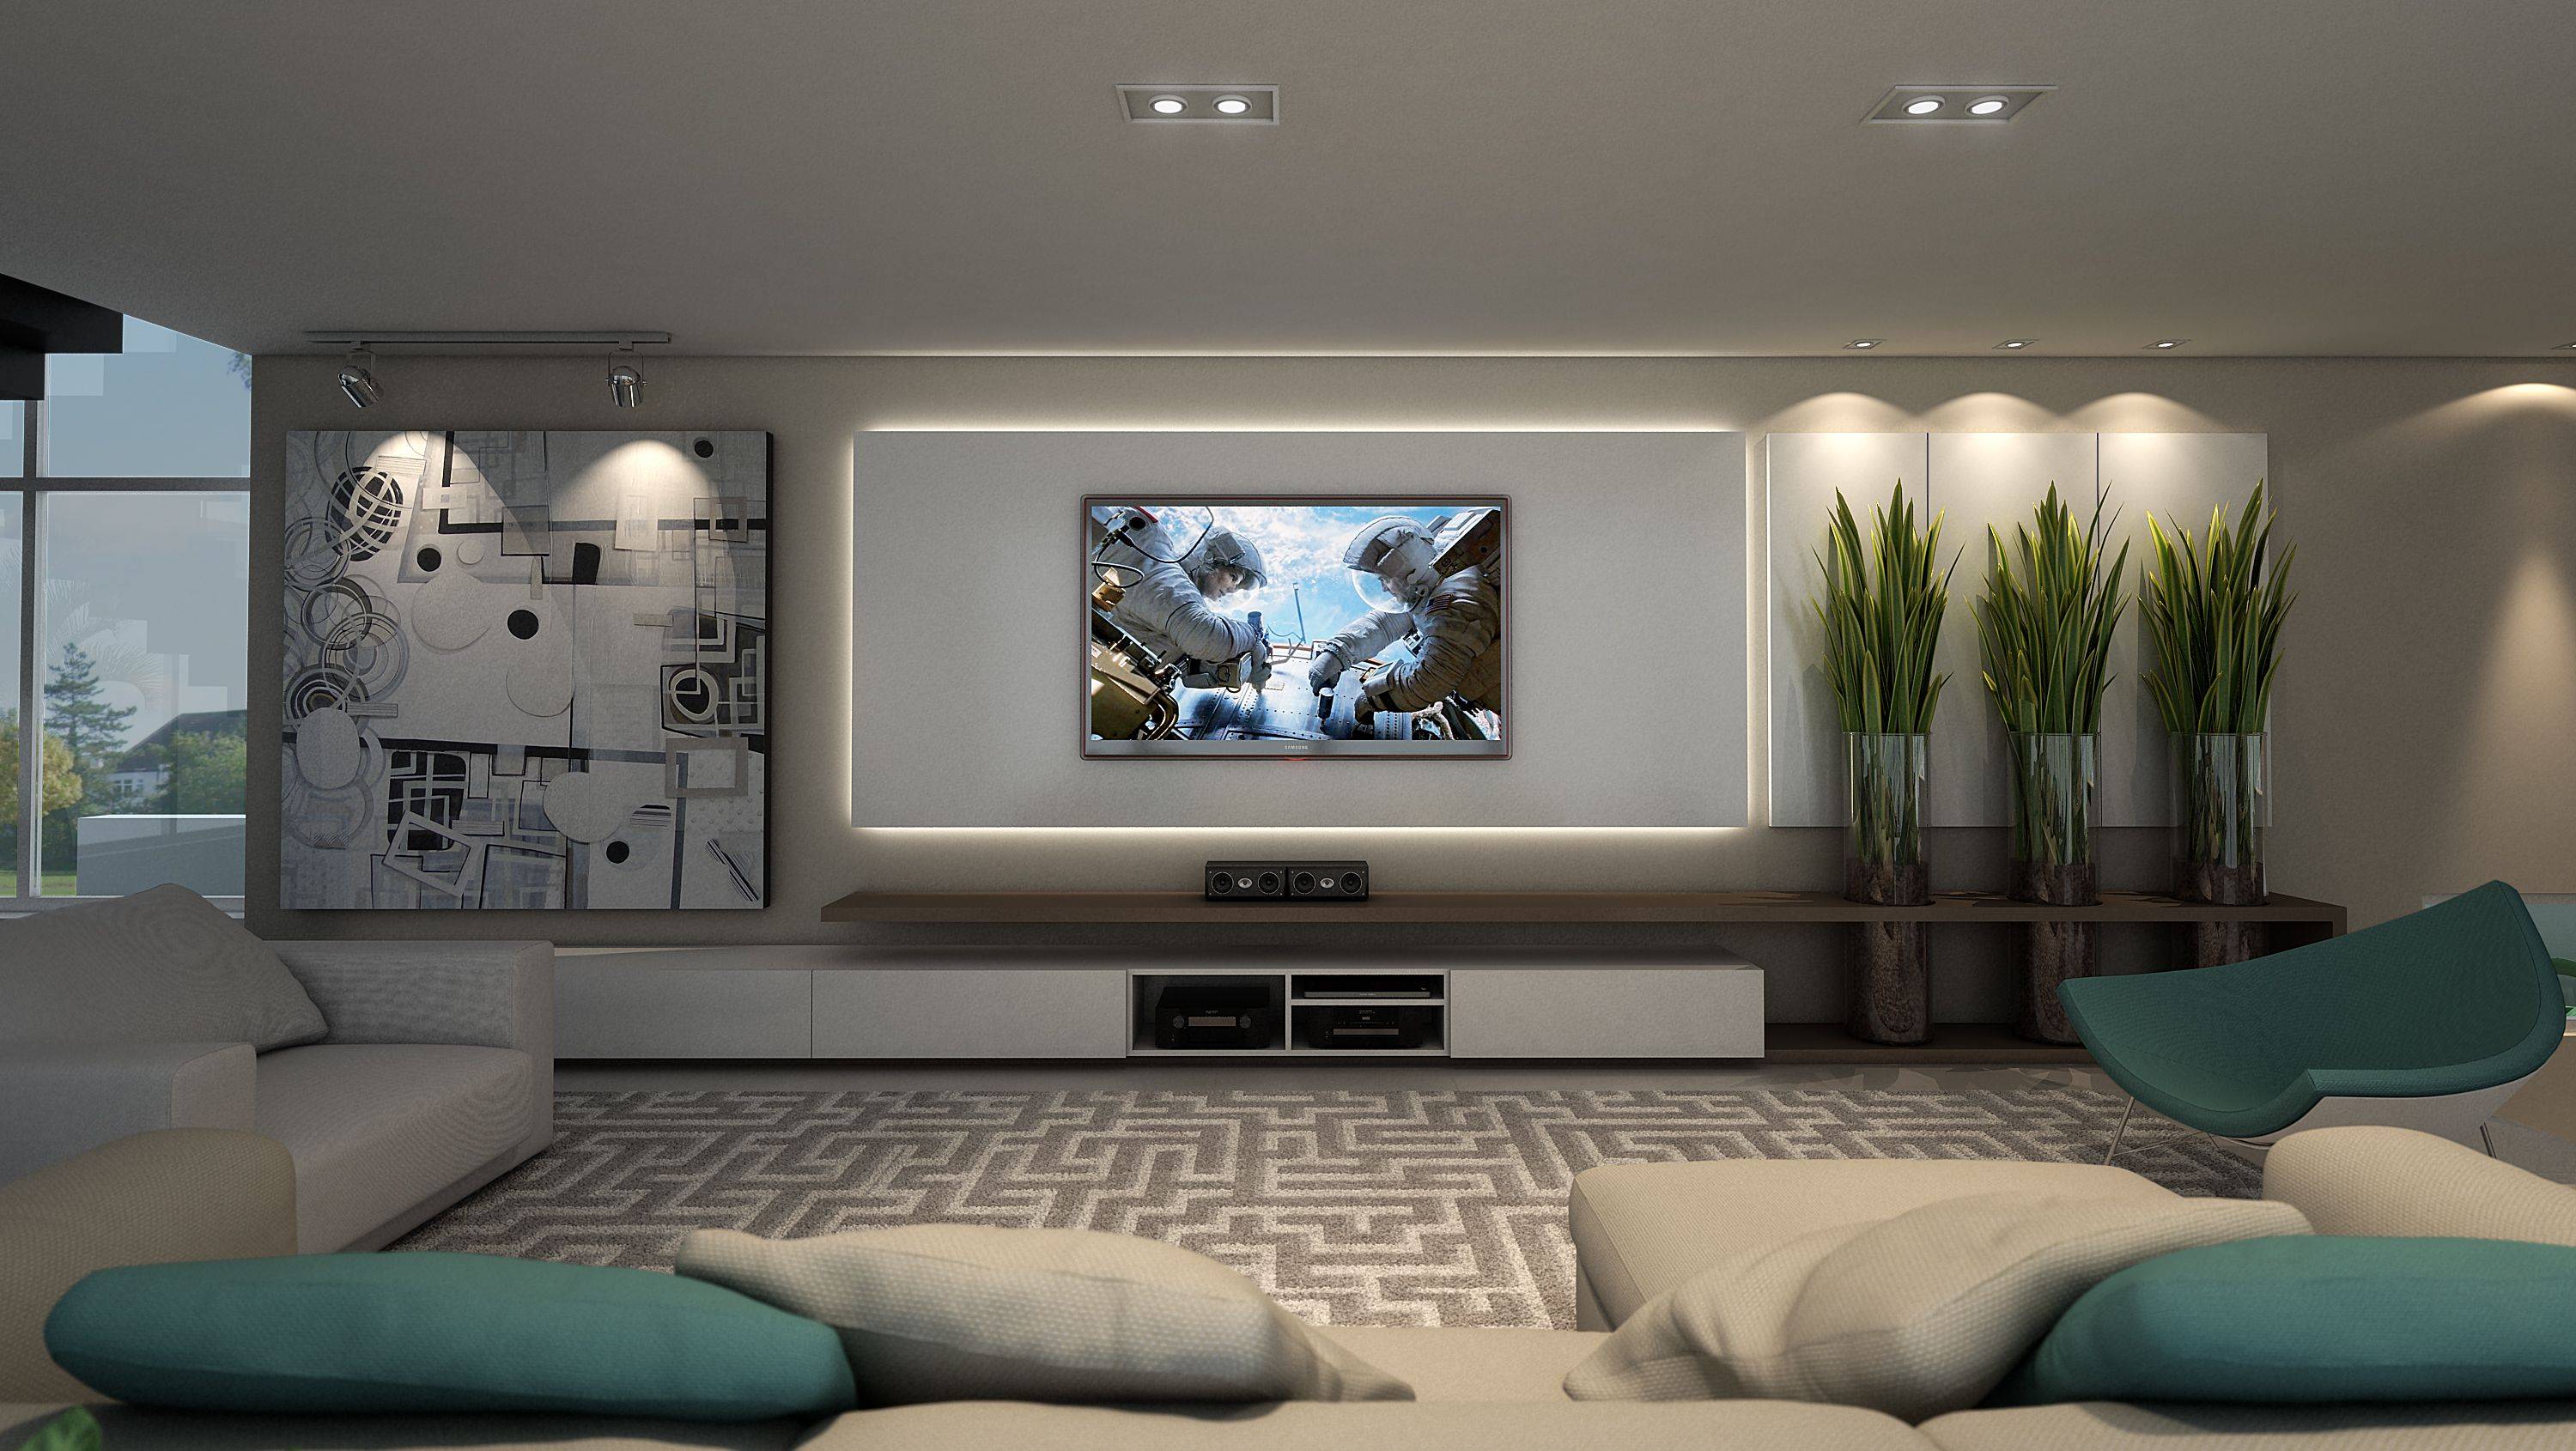 Дизайн стены с телевизором - 17 красивых идей, 60 фото в реальных интерьерах